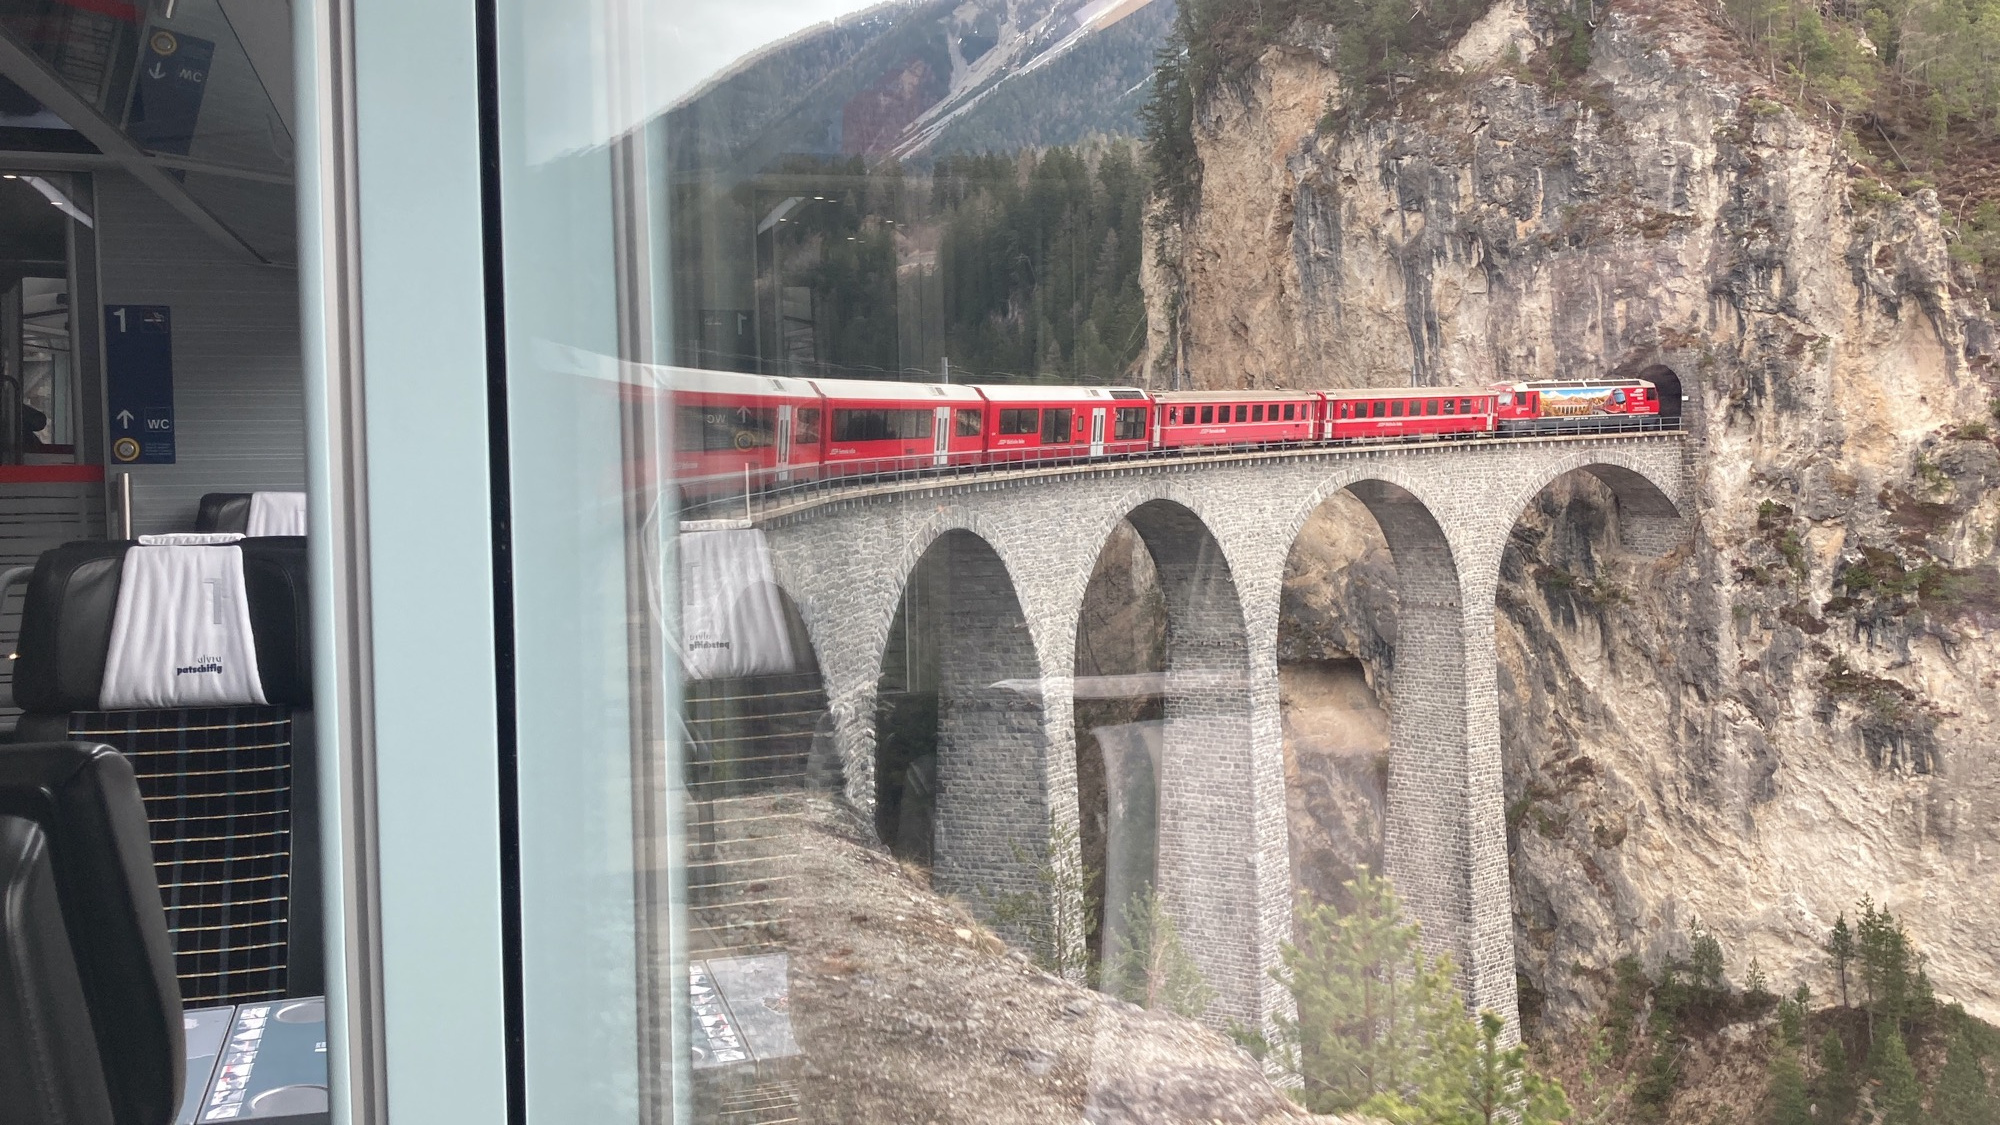 Blick aus dem Zugfenster des letzten Waggons, der Zug fährt gerade in eine Kurve, die Lok und die vorderen Waggons fahren auf einem sehr hohen Viadukt über eine Schlucht, die Lok fährt im nächsten Moment in einen Tunnel ein, der an das Viadukt anschließt